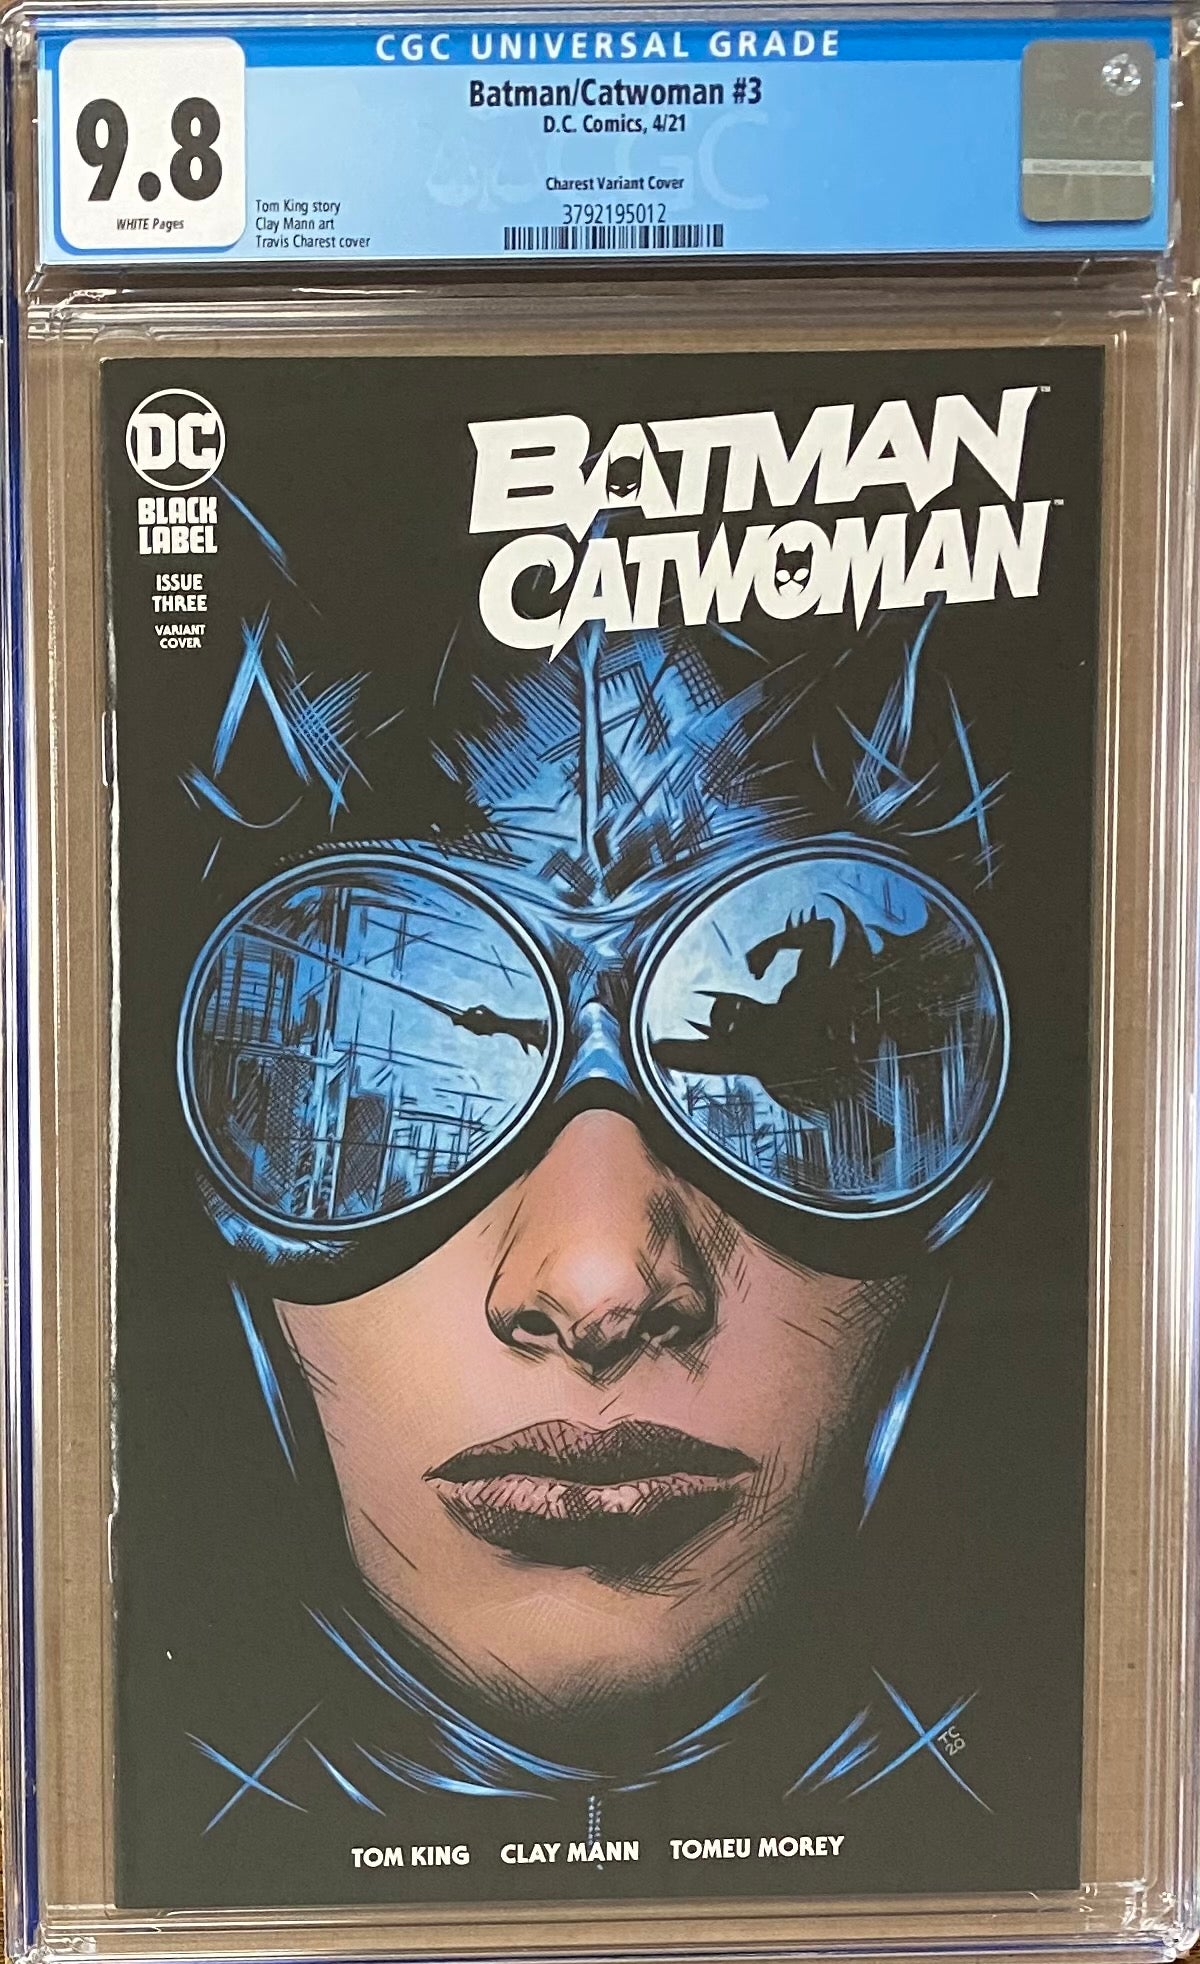 Batman Catwoman #3 Charest Variant DC Black Label CGC 9.8